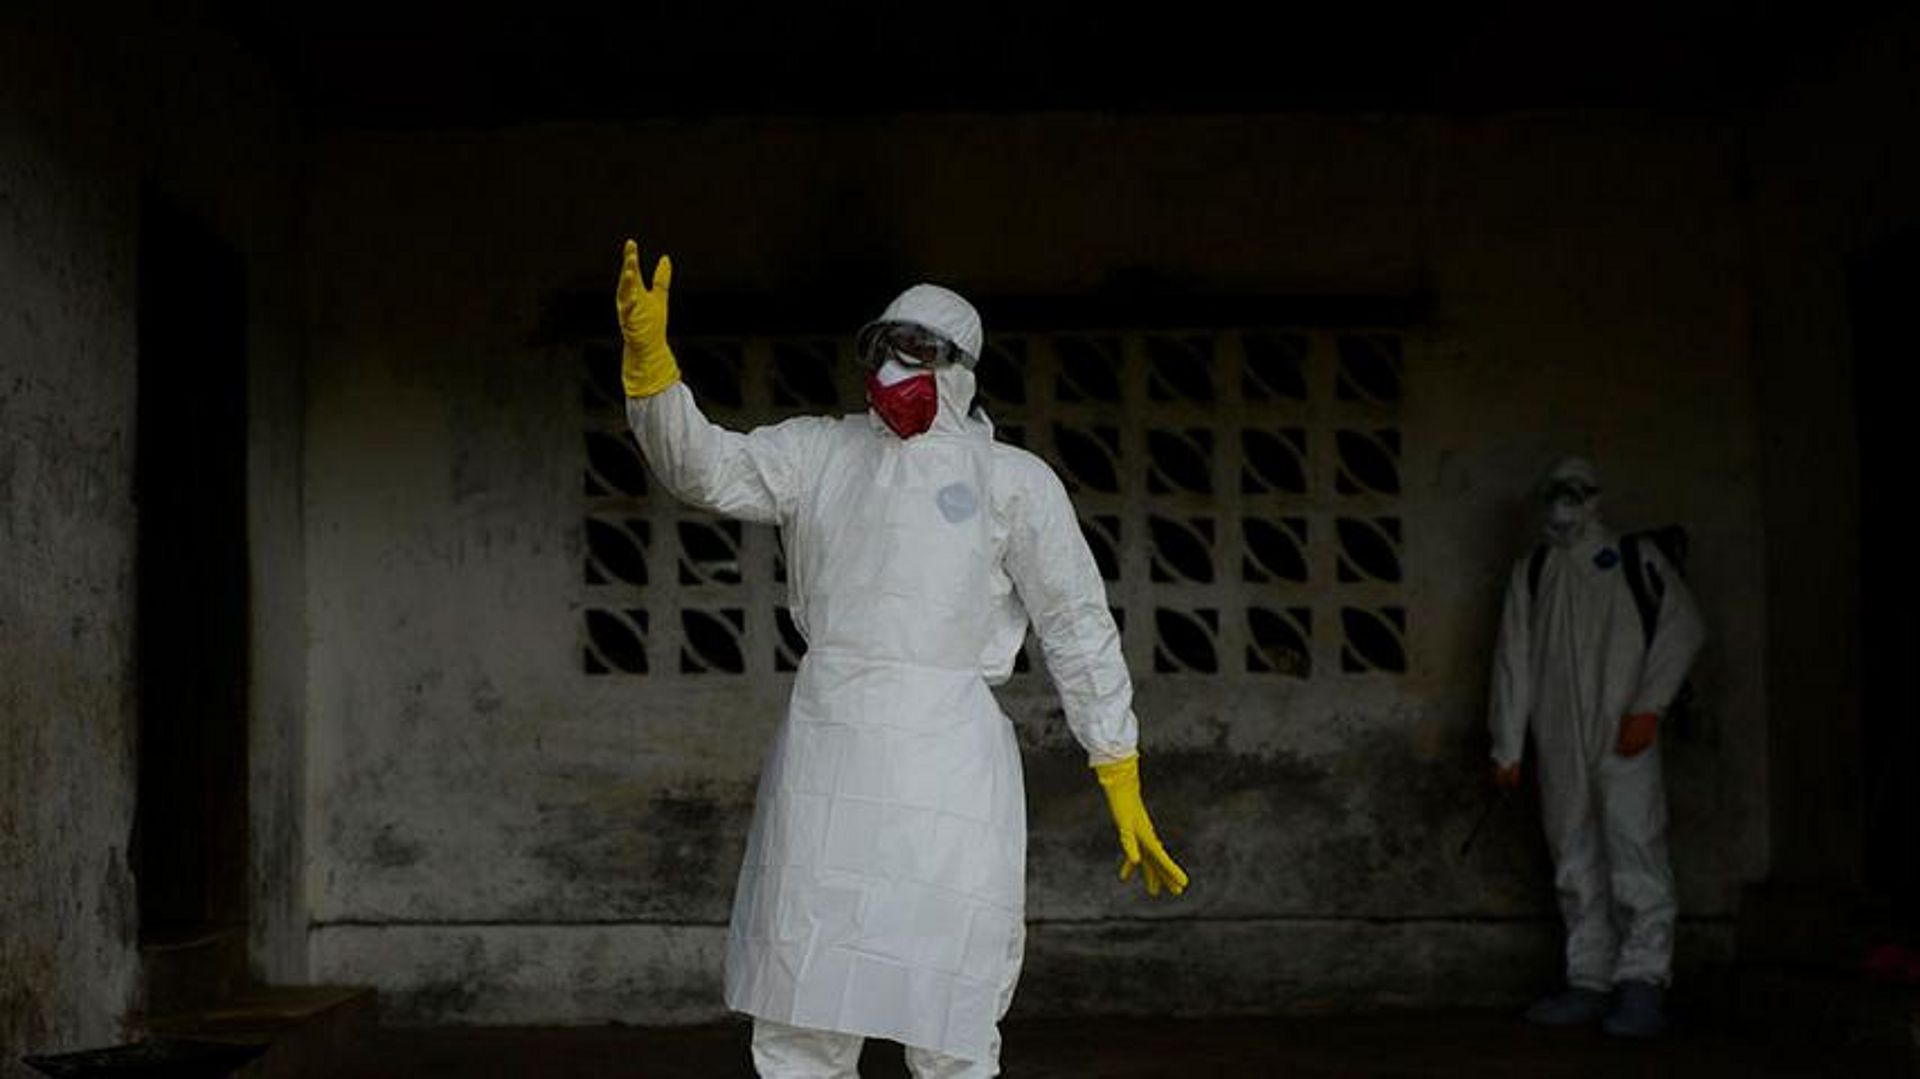 Die Ebola Epidemie hat soziale und politische Ursachen, die angegangen werden müssen. (Foto: Benedicte Kurzen / NOOR)